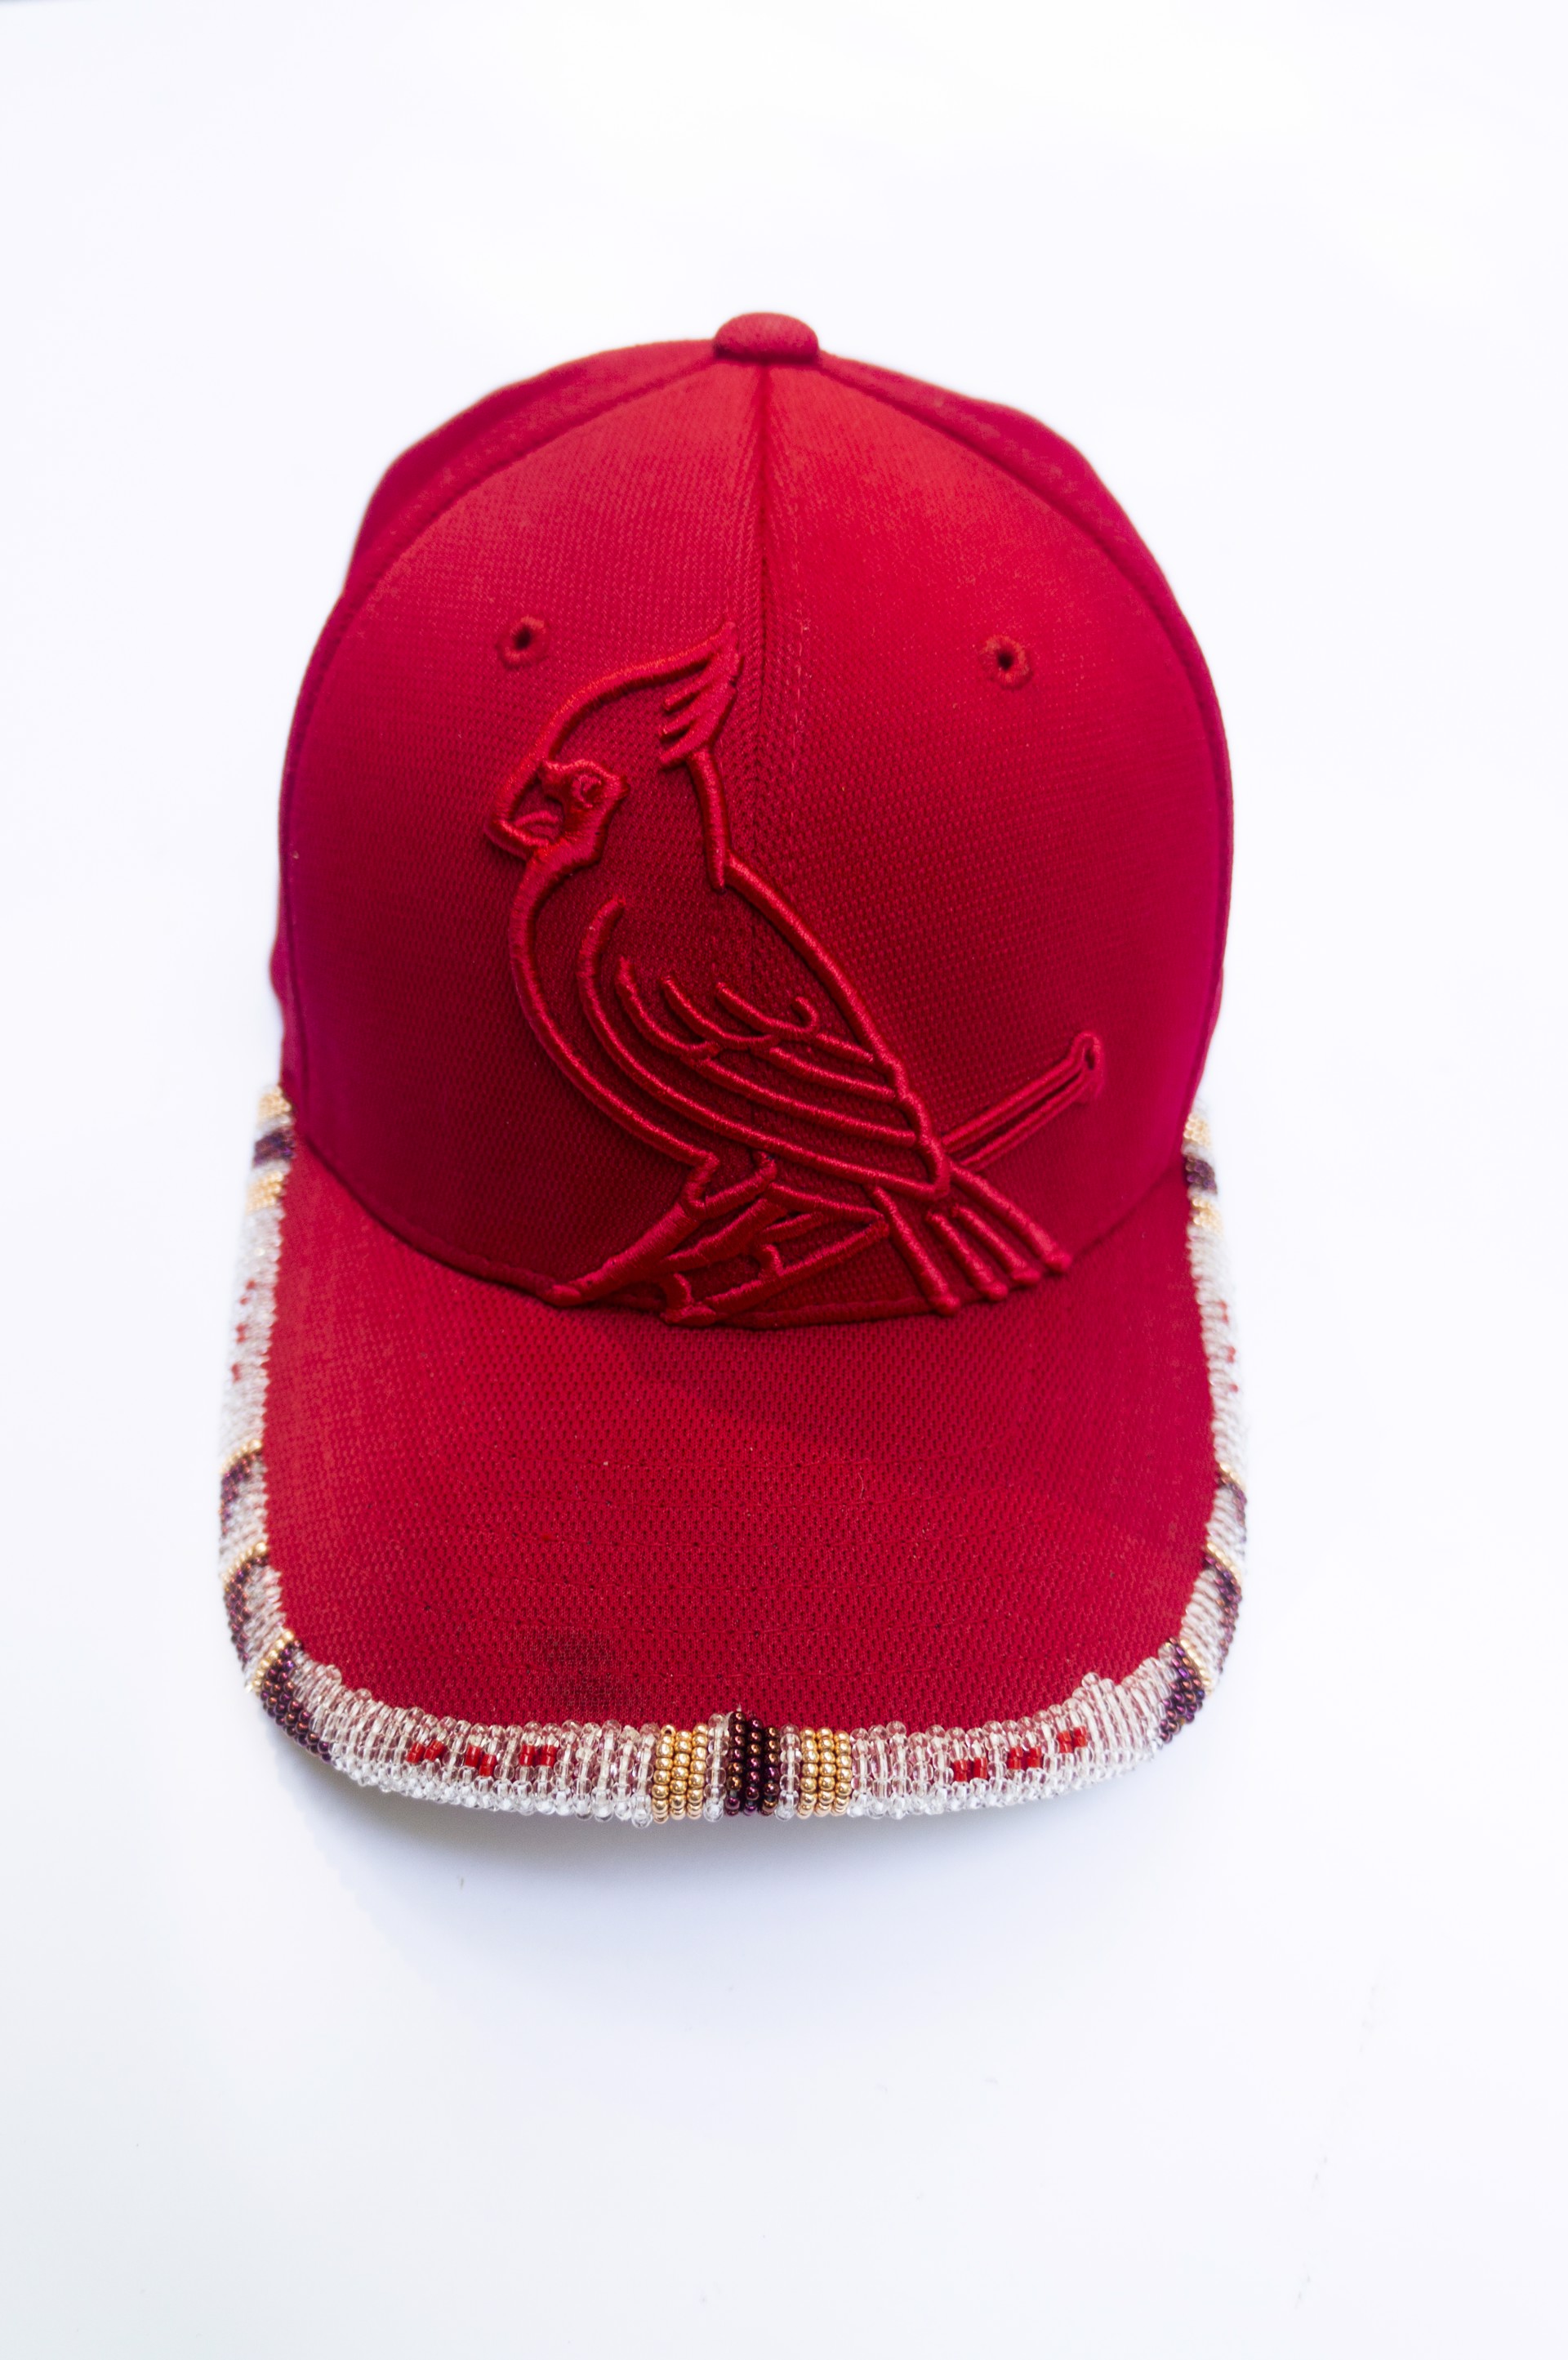 Cardinals Beaded Cap by Hattie Lee Mendoza